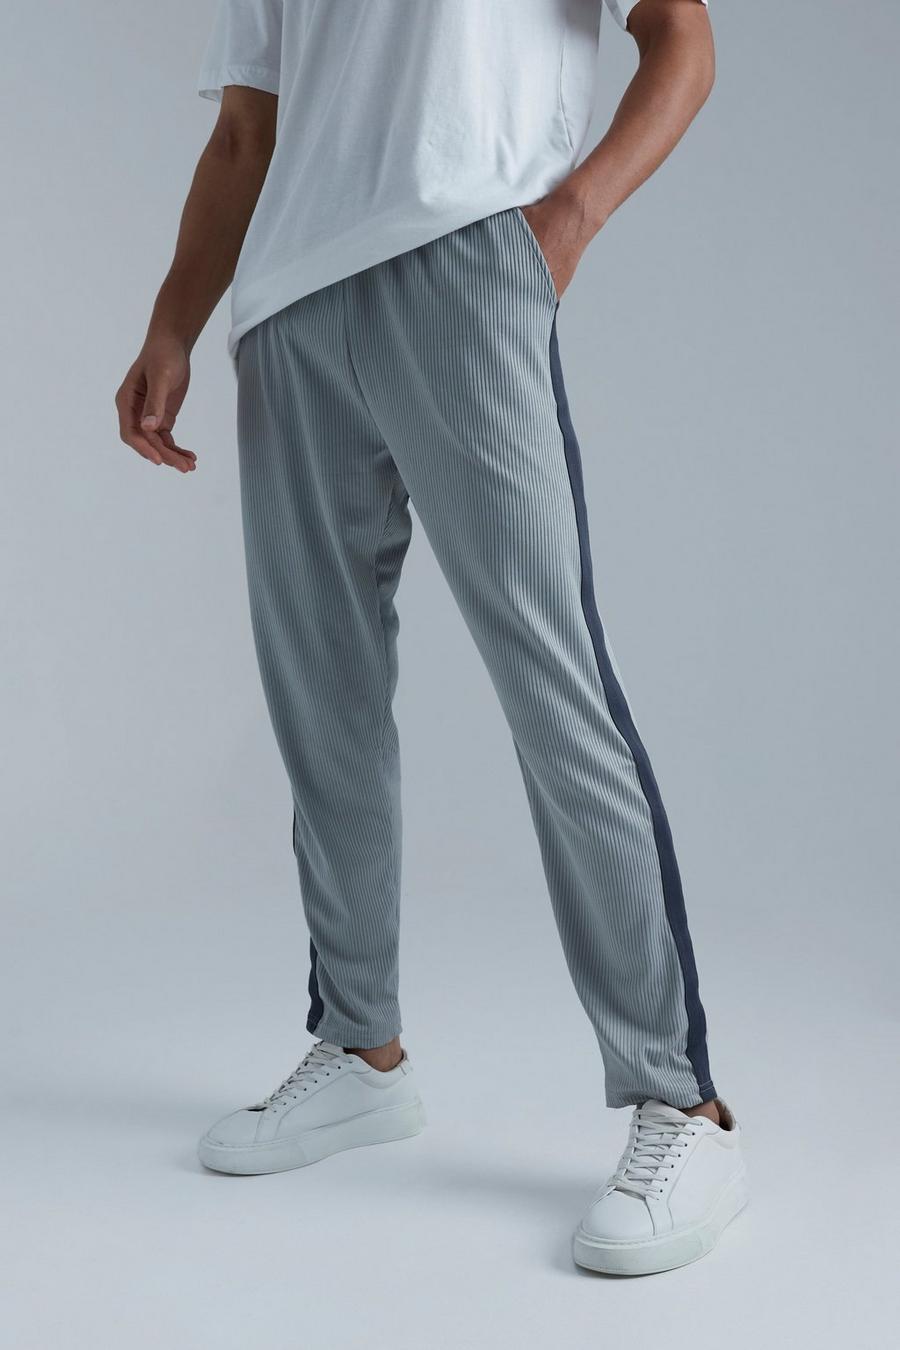 Pantalón deportivo Tall pesquero plisado ajustado con cinta, Grey gris